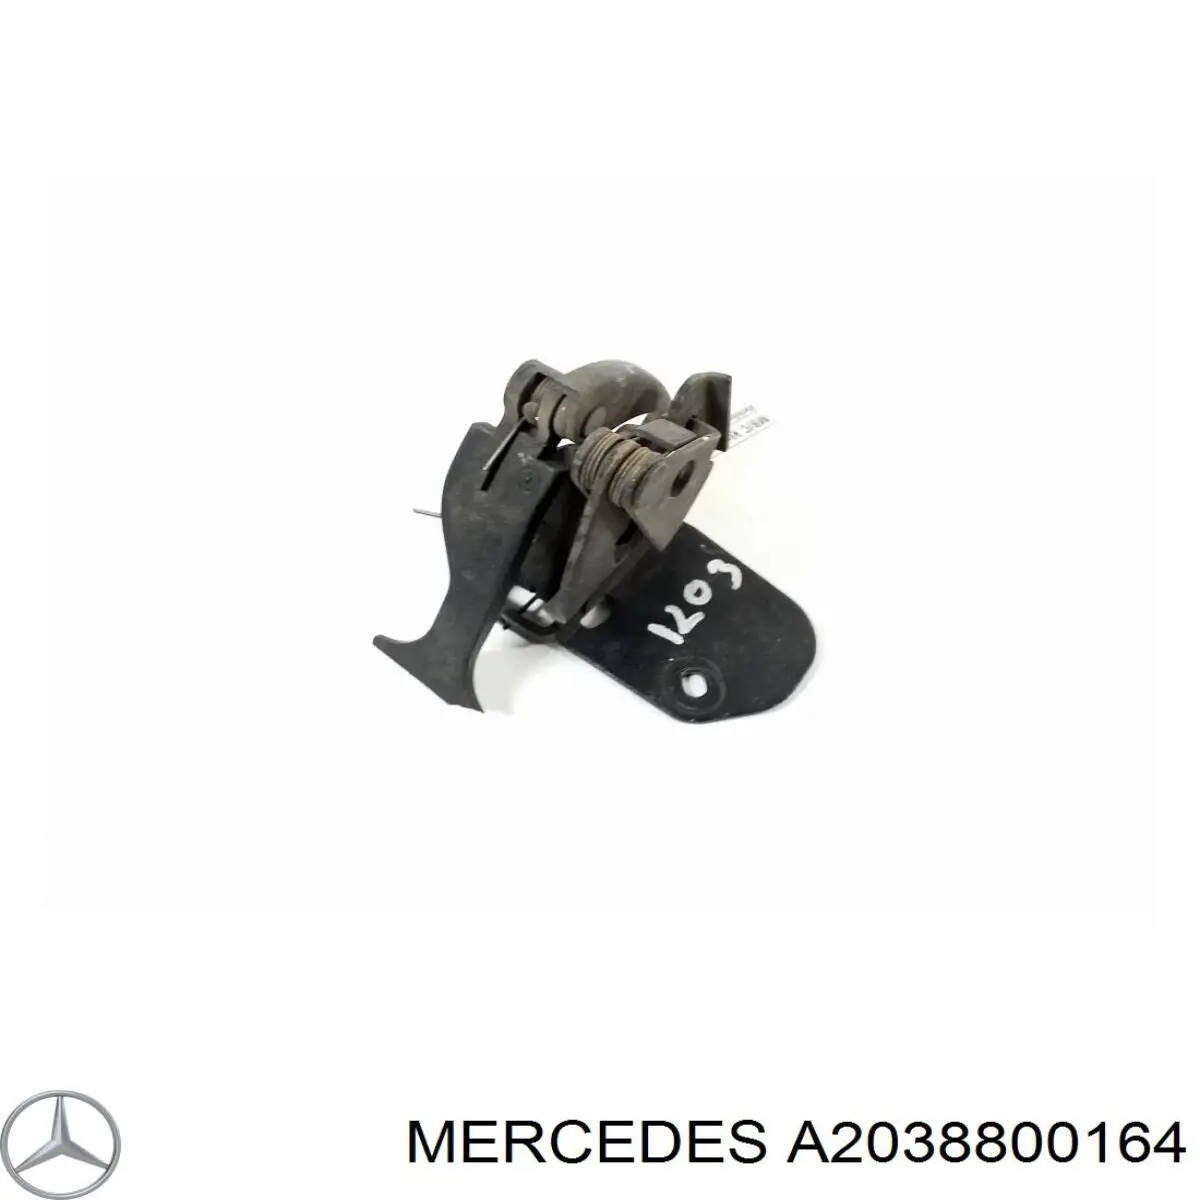 A2038800164 Mercedes стояк-крюк замка капота